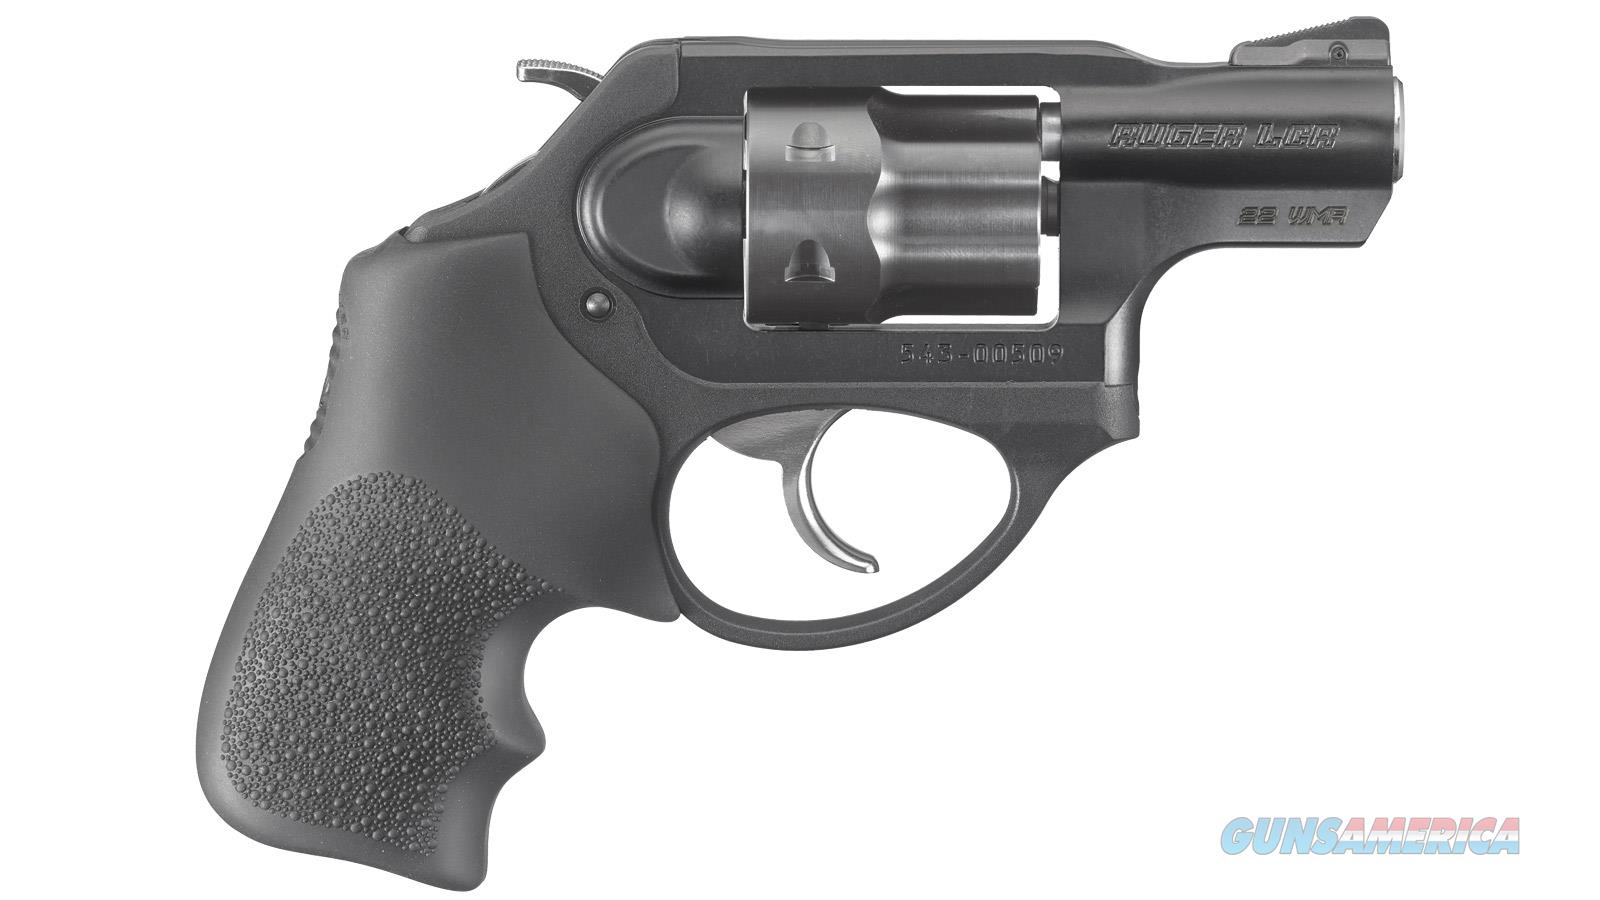 Ruger Lcrx 22 Magnum Revolver For Sale At 993520629 5712